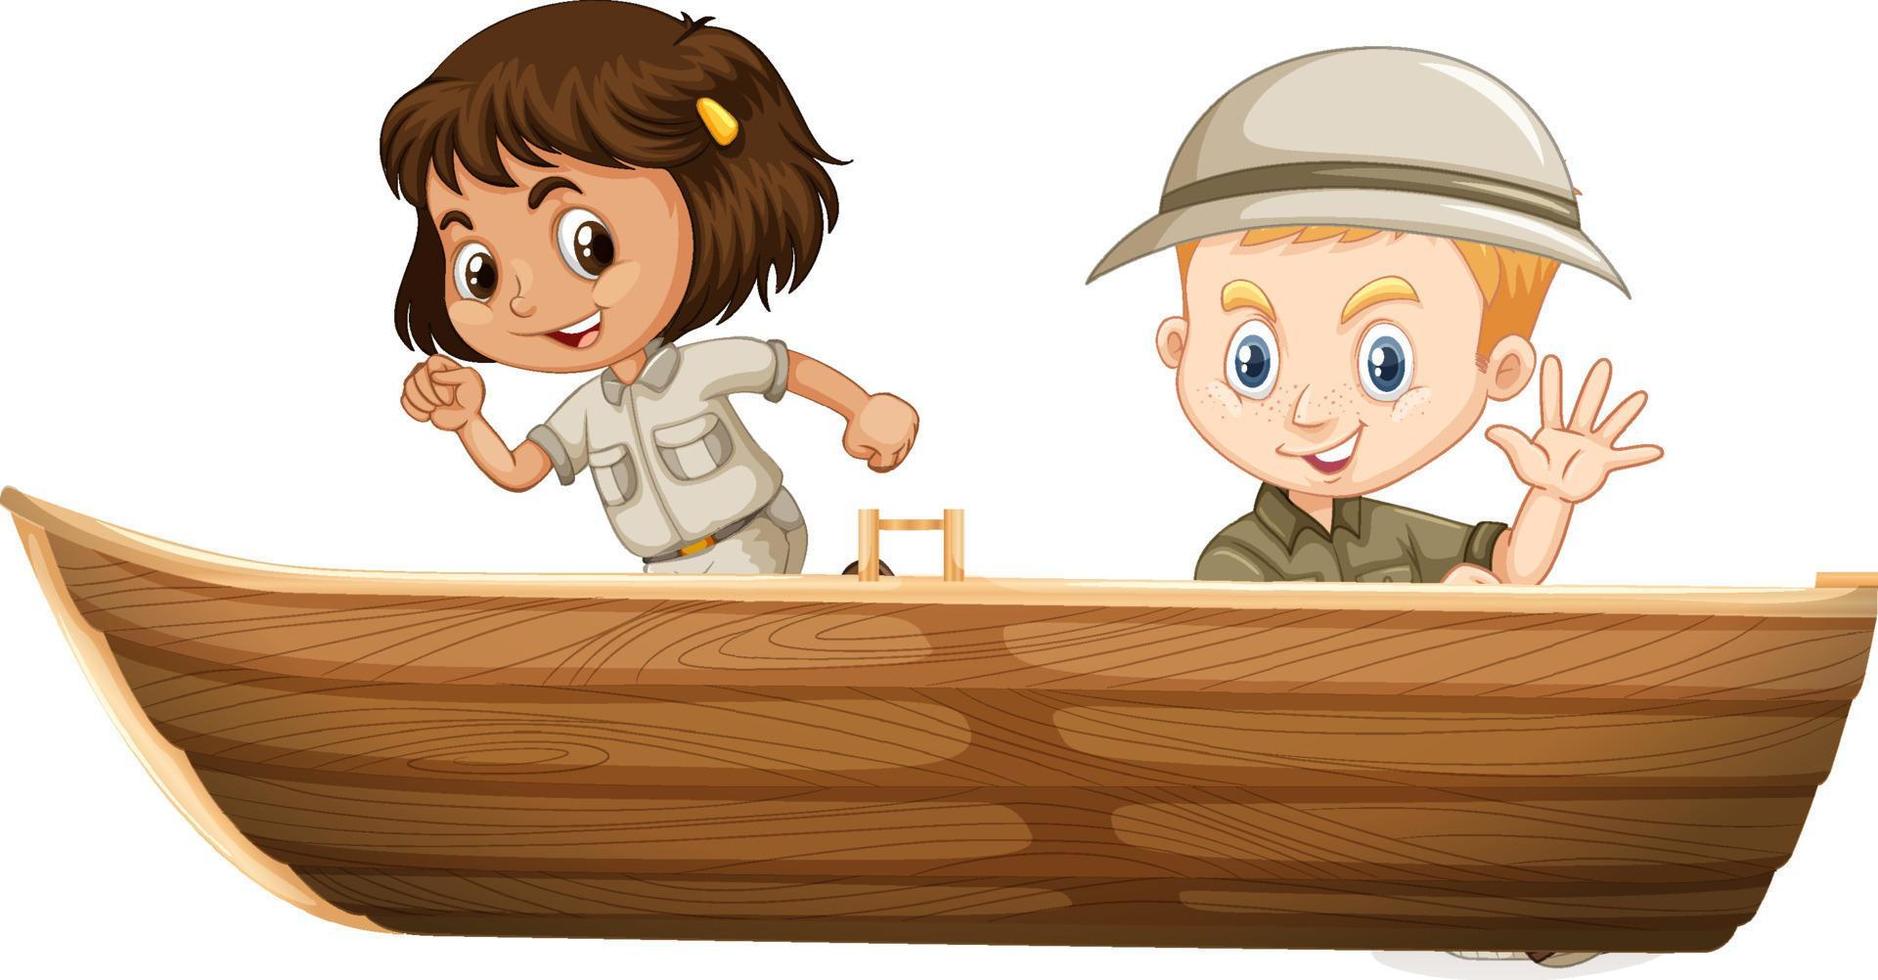 pojke och flicka i safari outfit sitter på en båt på en vit bakgrund vektor